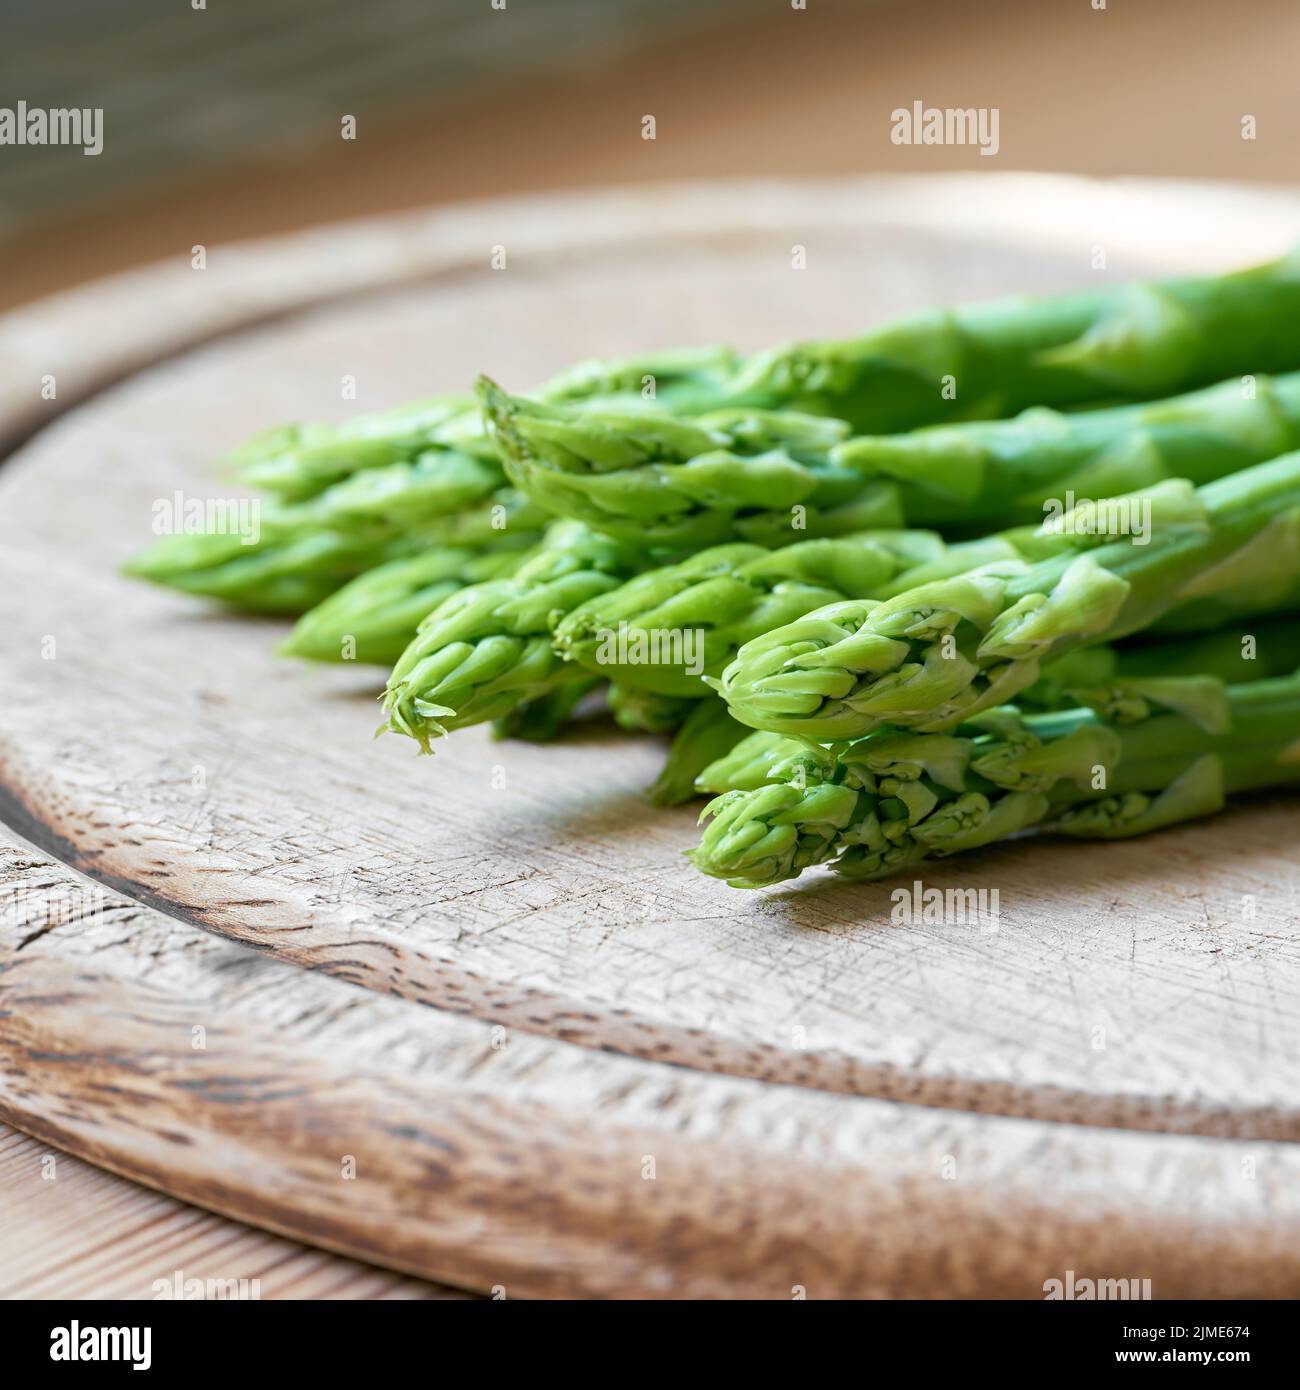 Asparagi verdi freschi da un campo di asparagi come ingrediente in una cucina Foto Stock